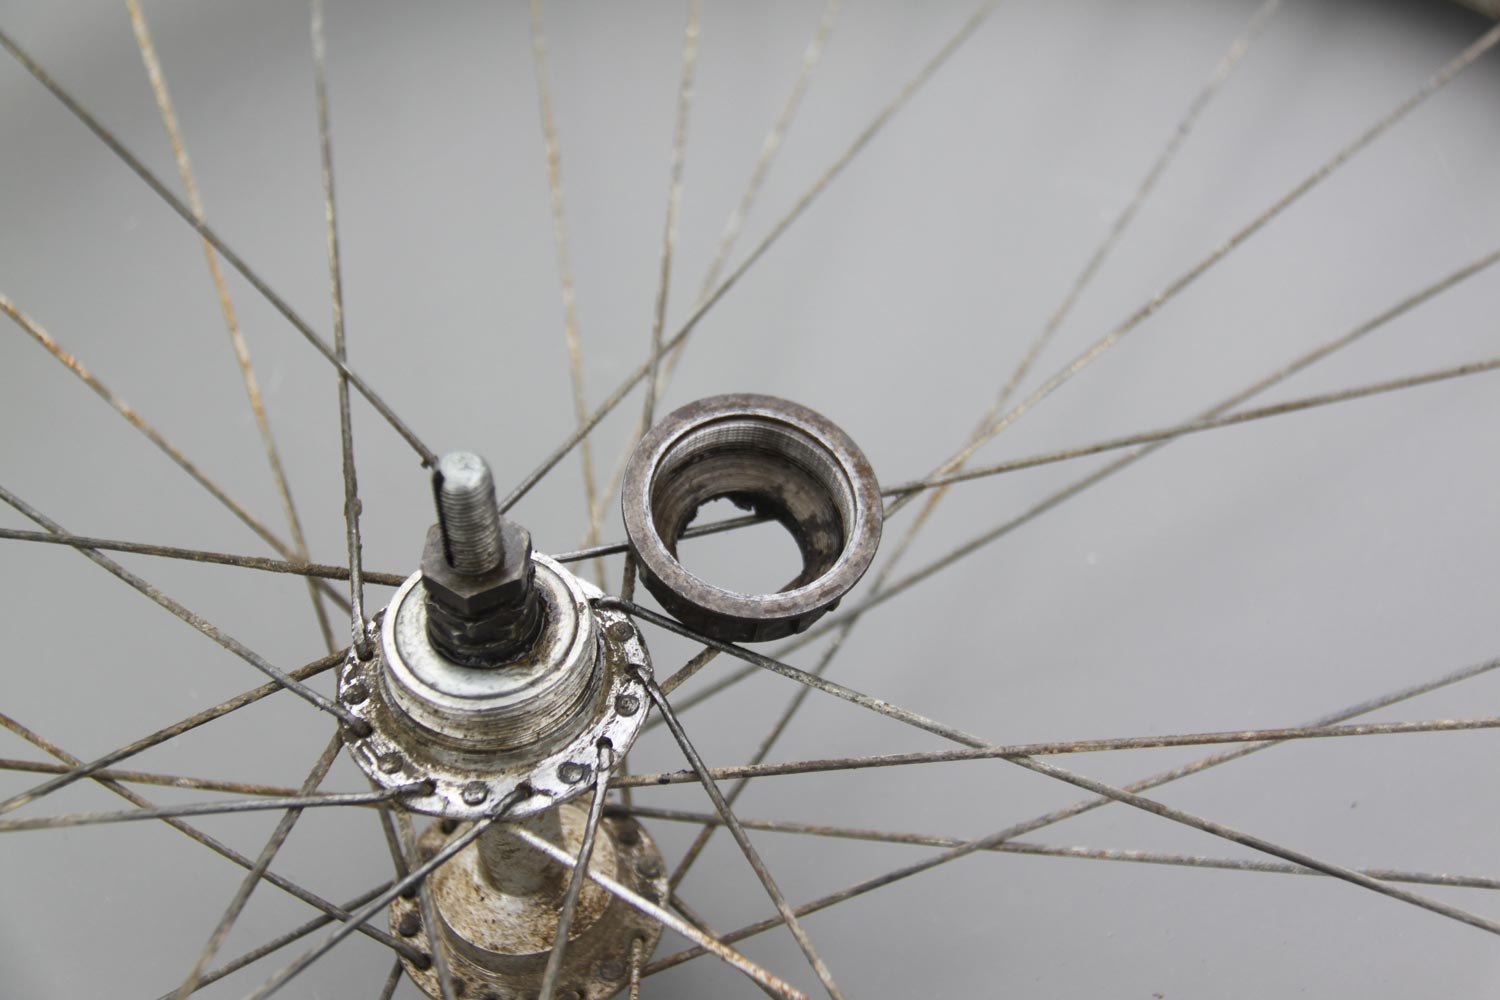 Petit Guide de la restauration d'un vélo ancien